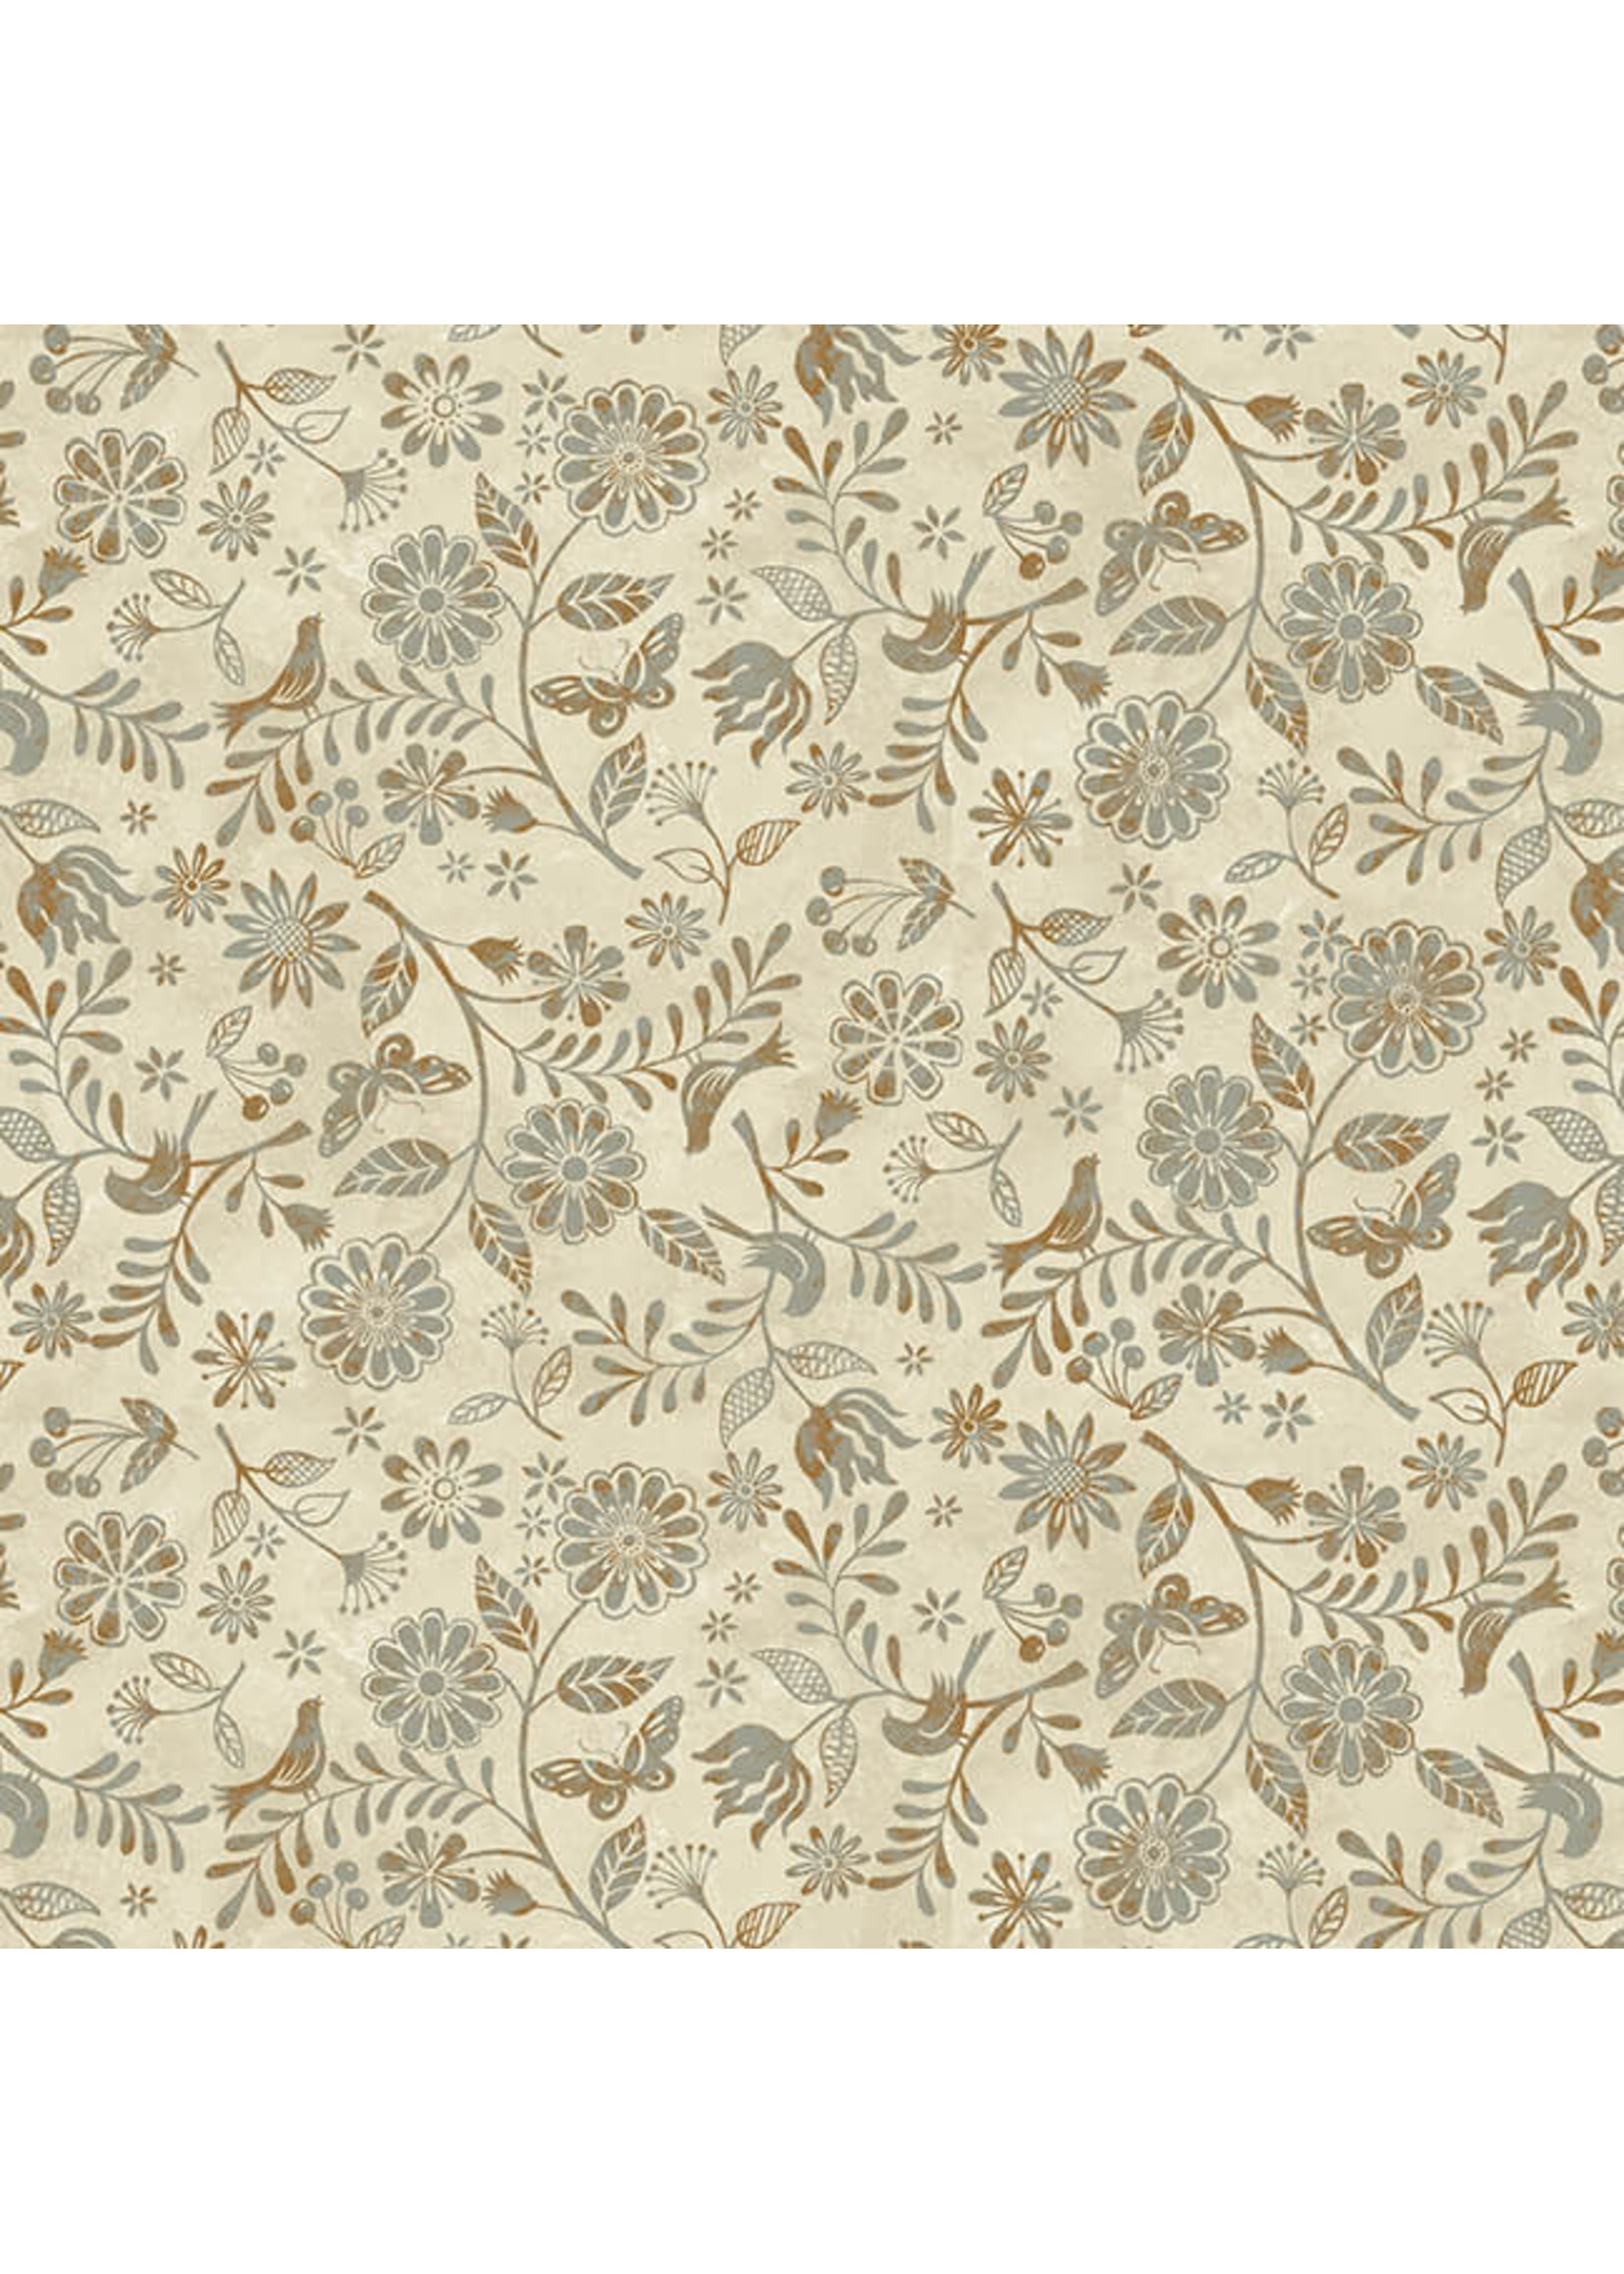 Studio E Fabrics Le Poulet - Small Wildflower Allover - Cream